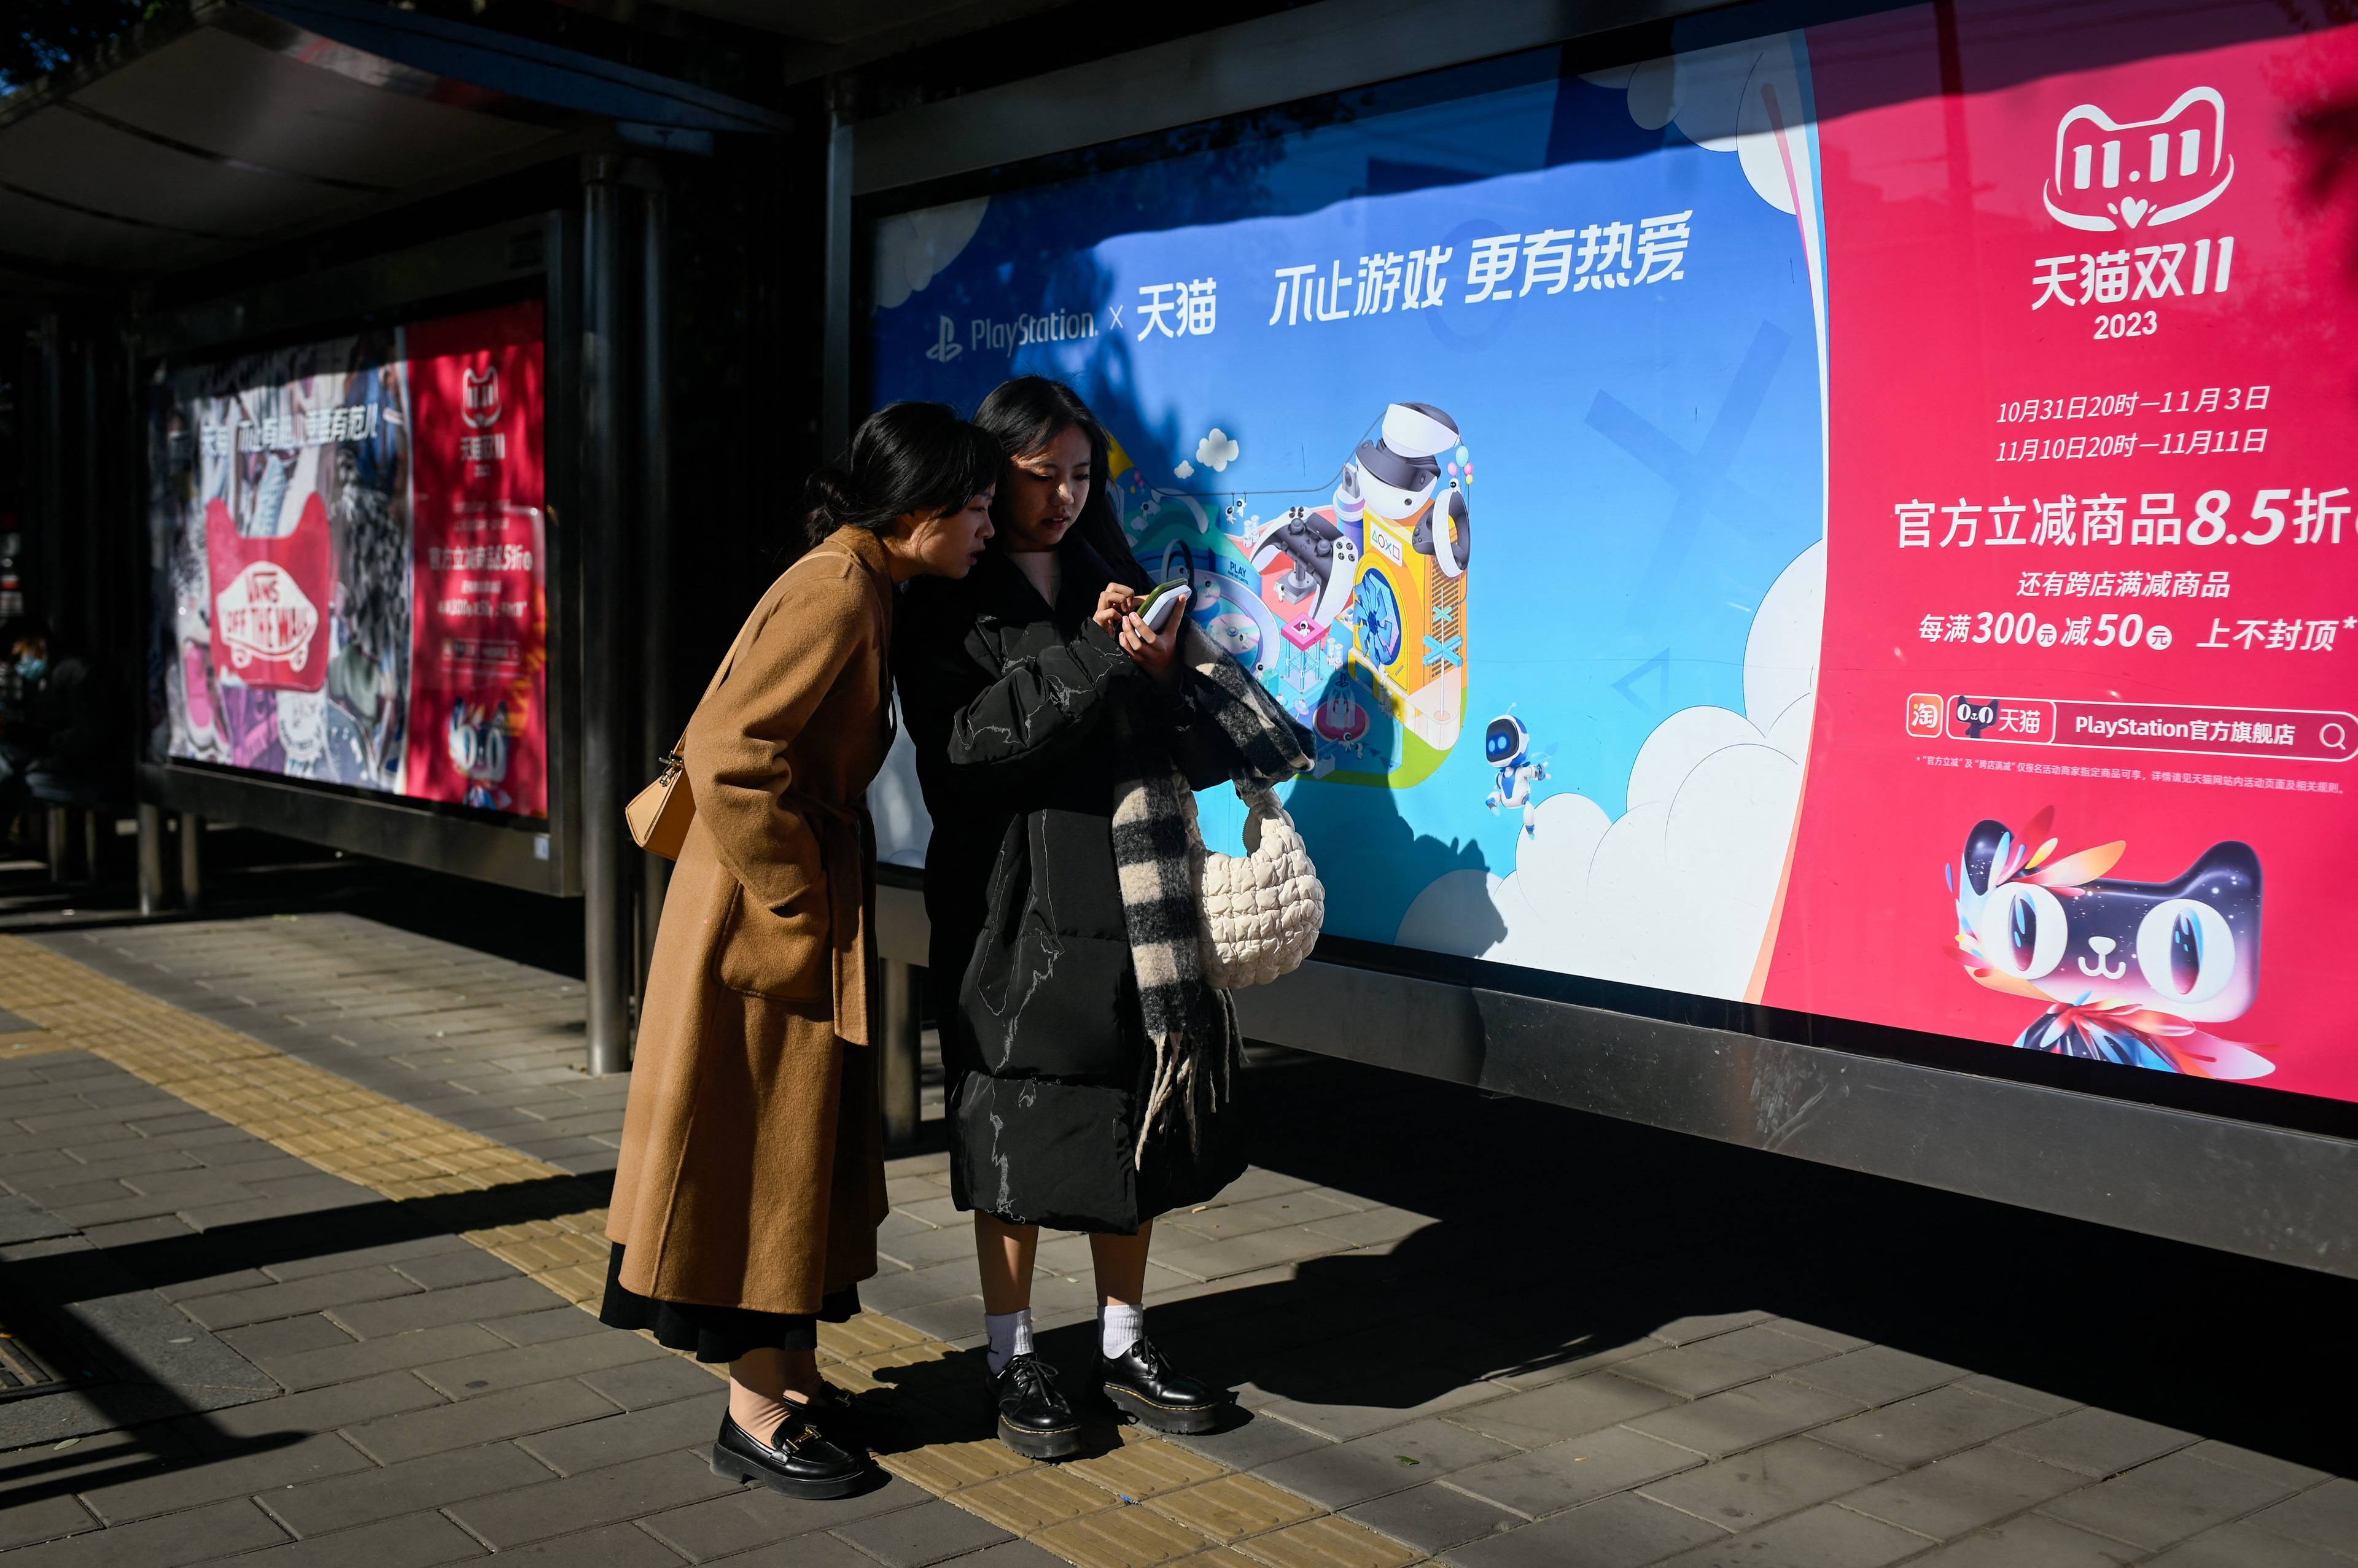 dwie Azjatki sprawdzające coś w komórce, w tle plakat po chińsku